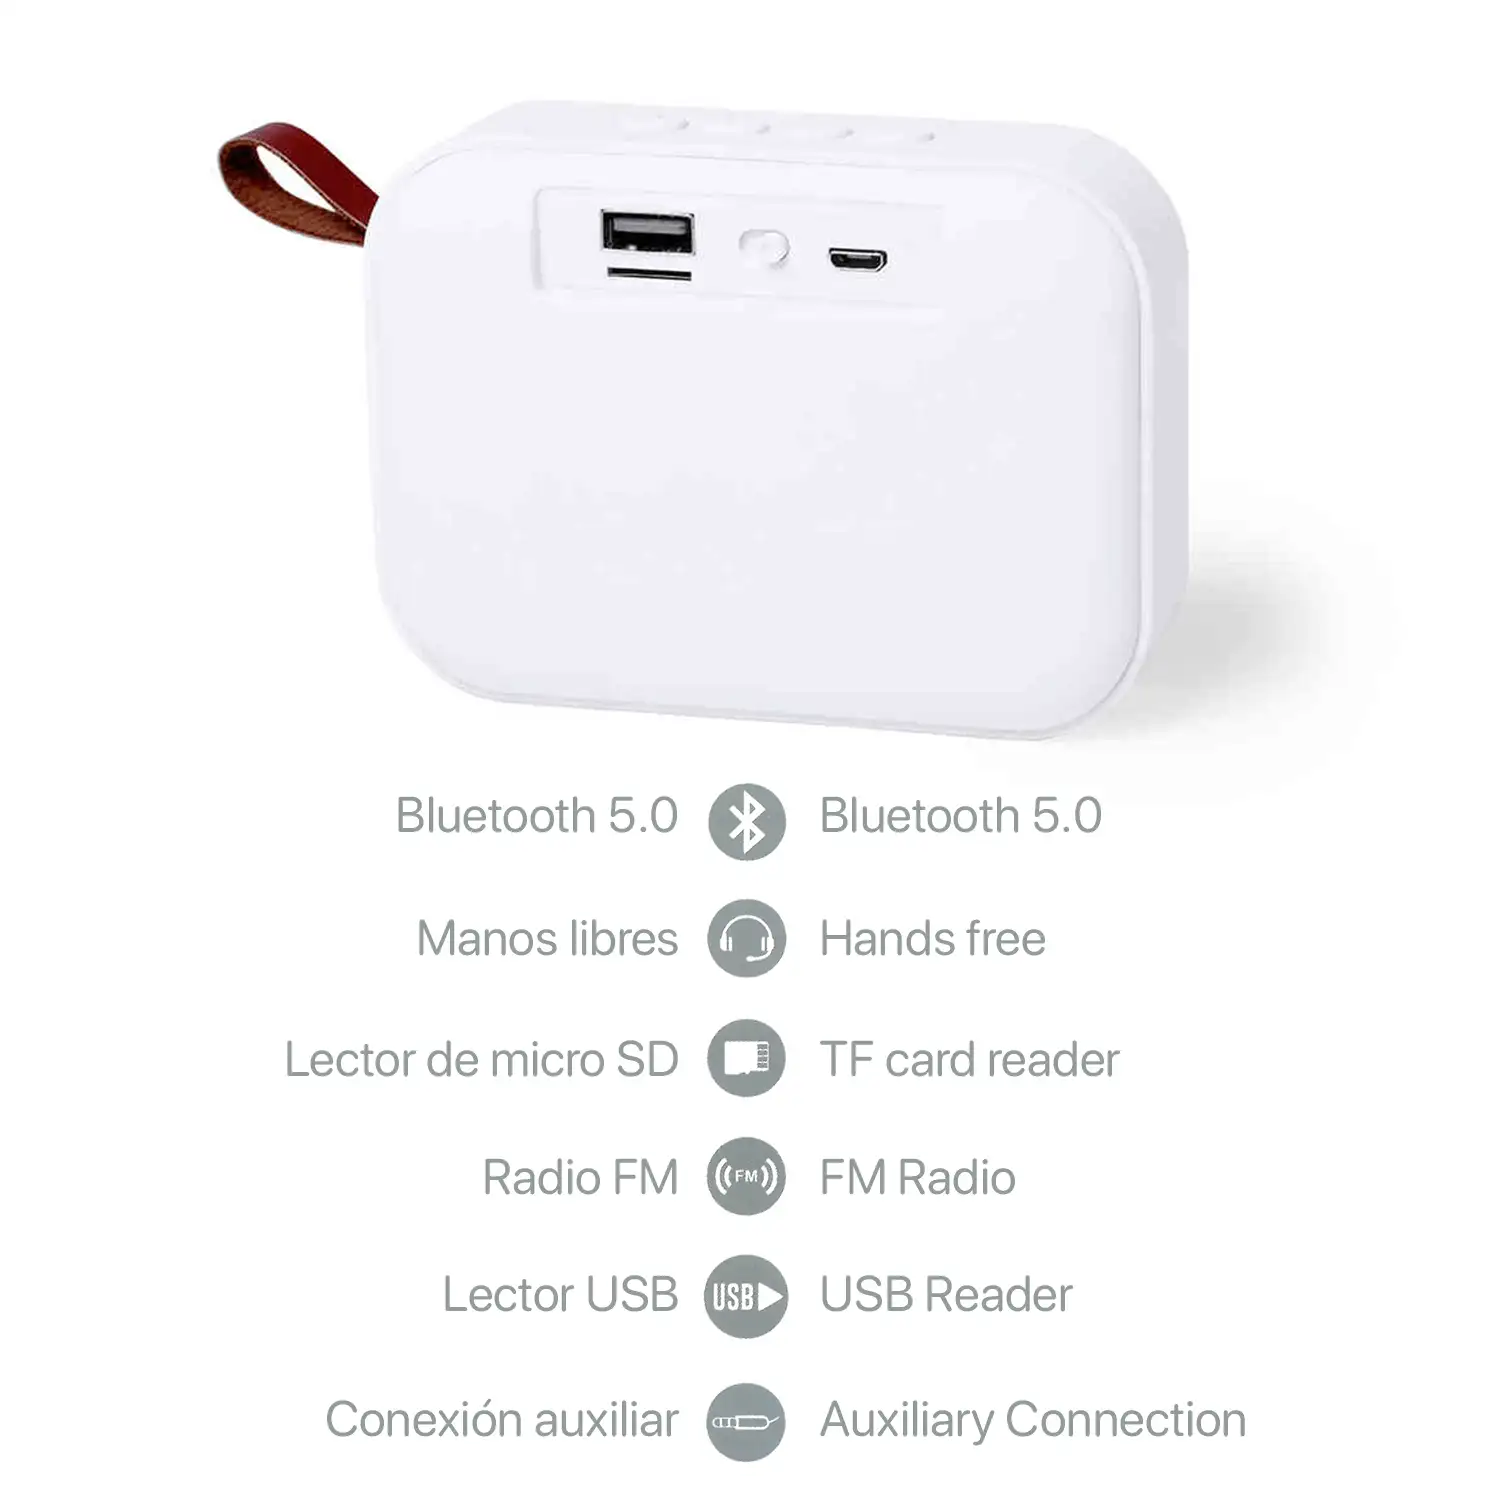 Altavoz Tirko Bluetooth 5.0 3W. Asa de polipiel. Función manos libres, USB, micro SD y radio FM.